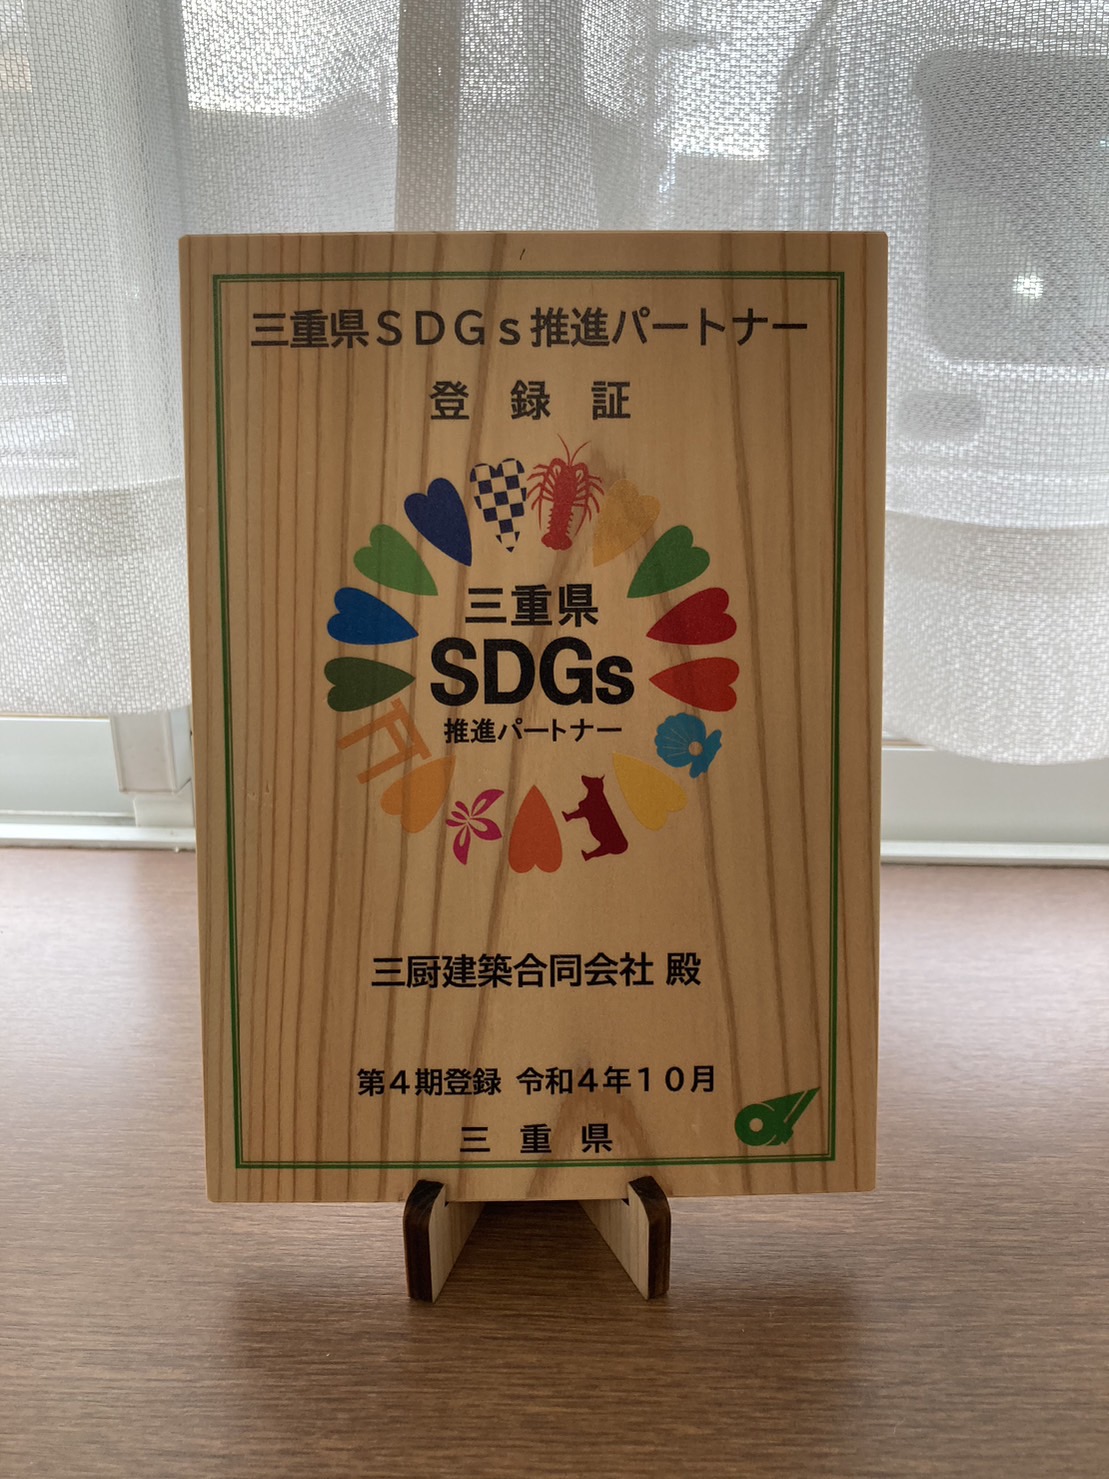 「三重県SDGs推進パートナー」木製の登録証